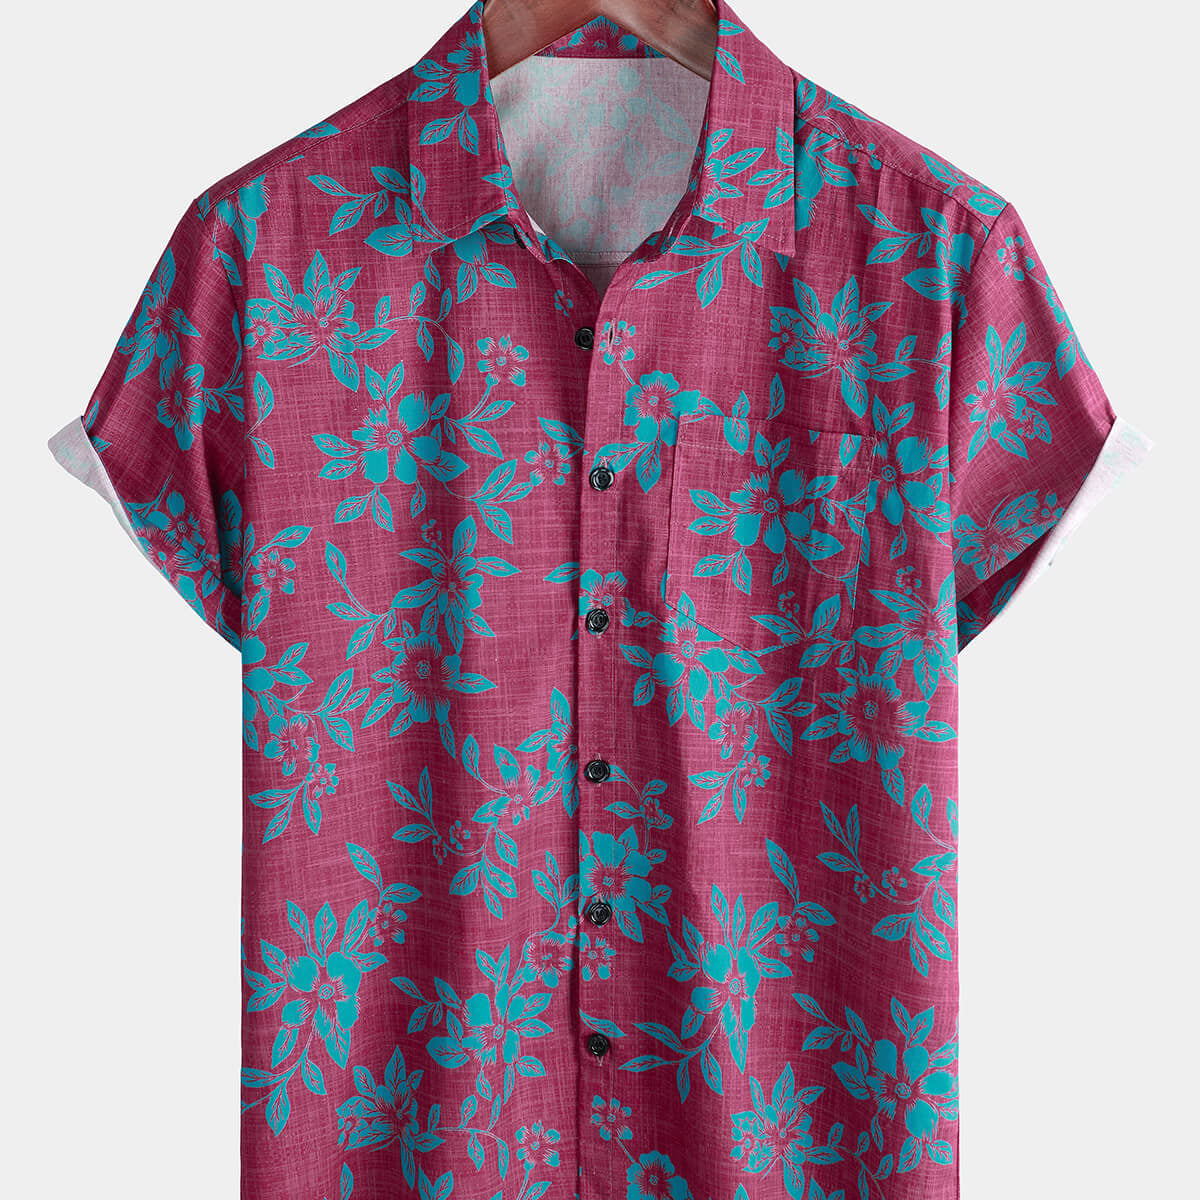 Men's Blue Floral Summer Button Up Cotton Short Sleeve Shirt